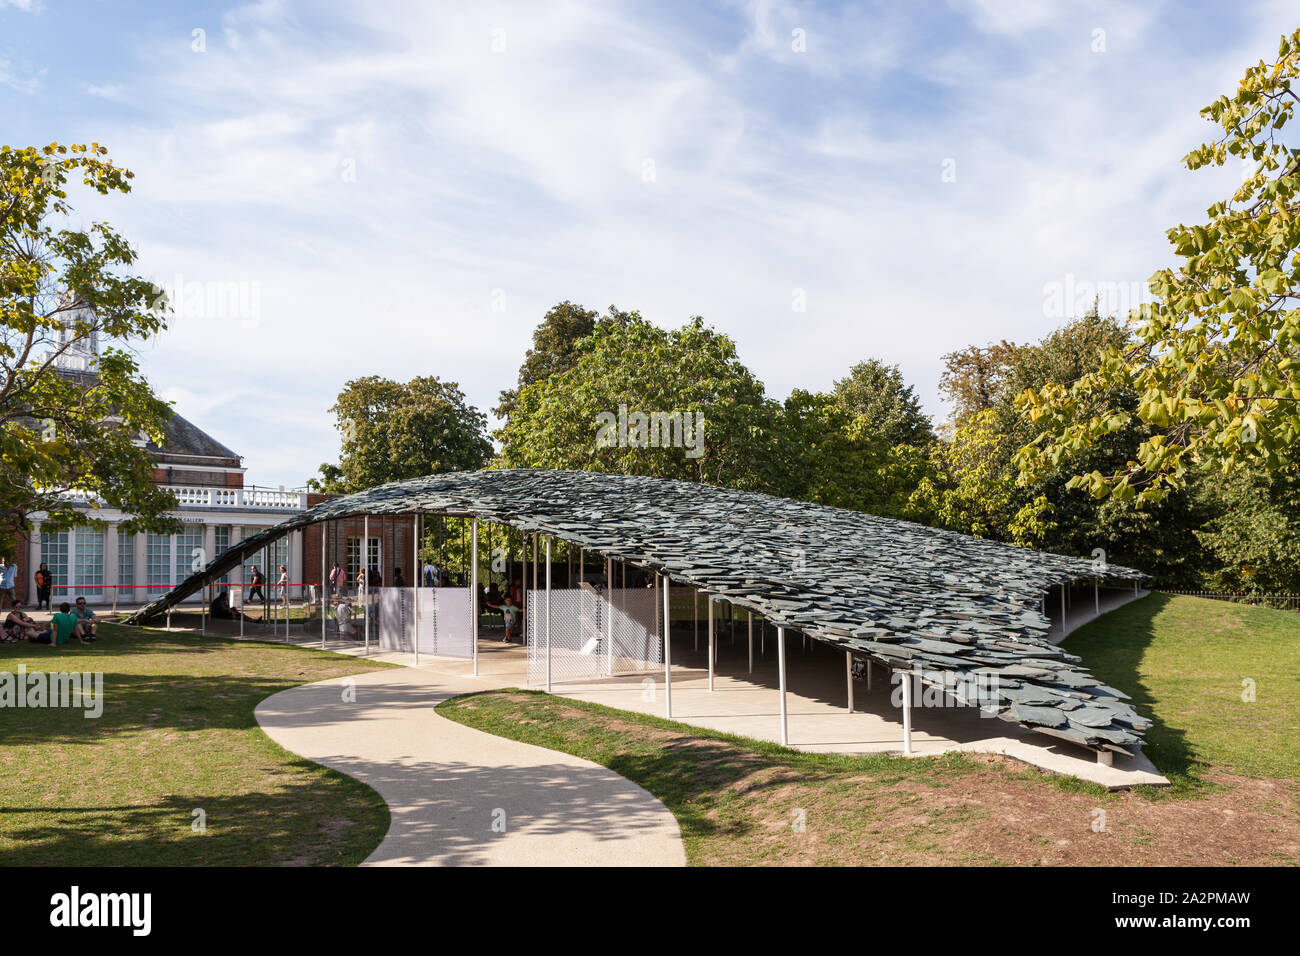 Die cumbrian Schiefer gedeckt temporäre Sommer Pavillon; eine Installation von dem japanischen Architekten Junya Ishigami in Kensington, West London Stockfoto